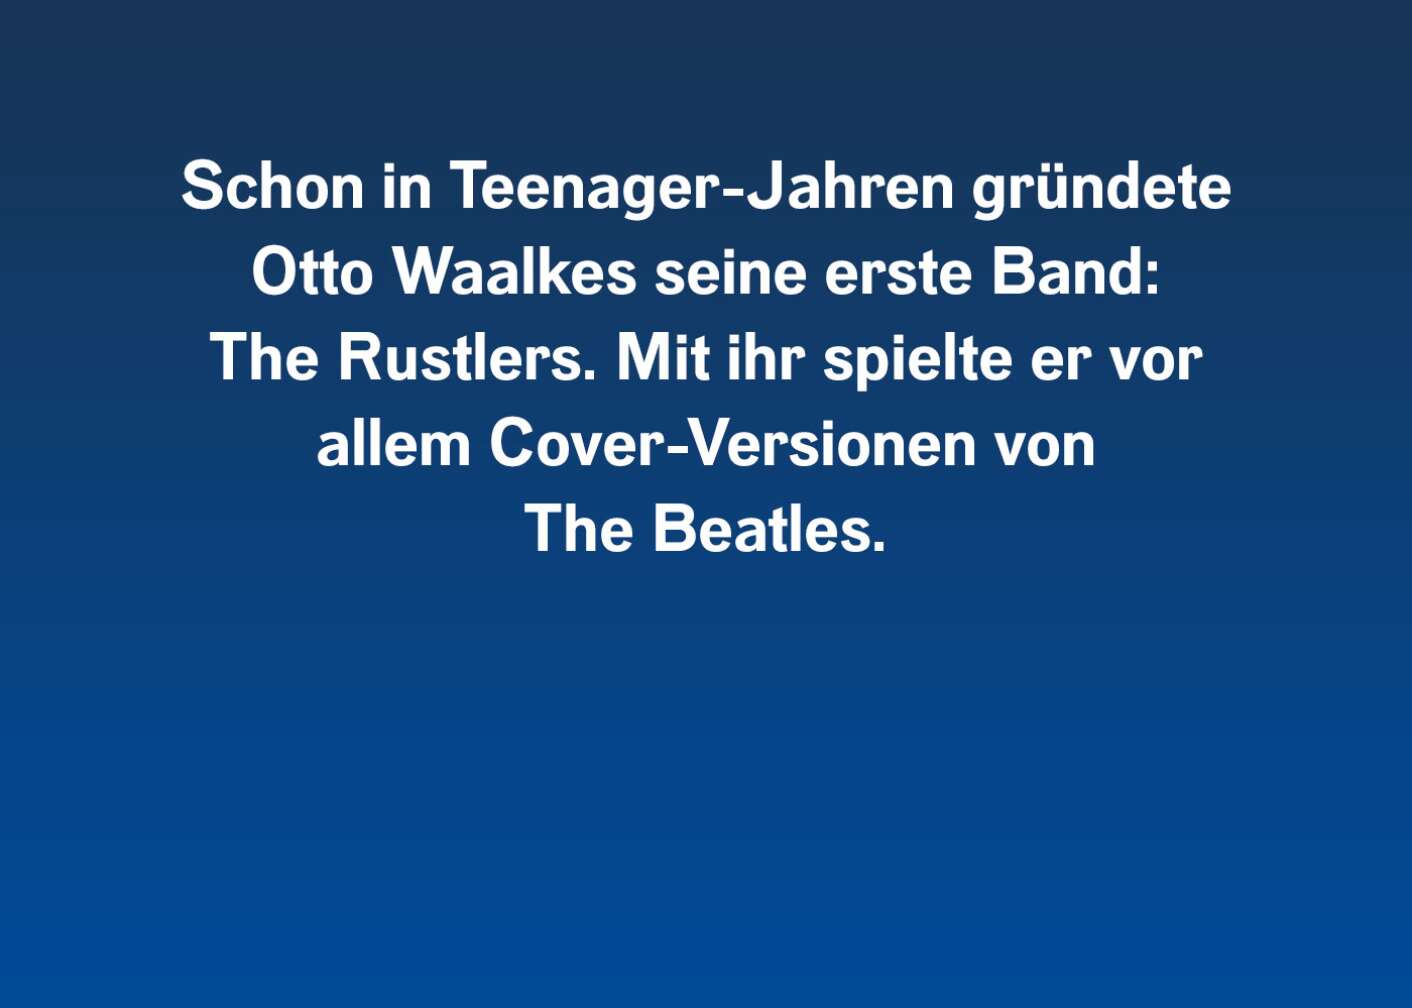 Schon in Teenager-Jahren gründete Otto Waalkes sein erste Band: The Rustlers. Mit ihr spielte er vor allem Cover-Versionen von The Beatles.